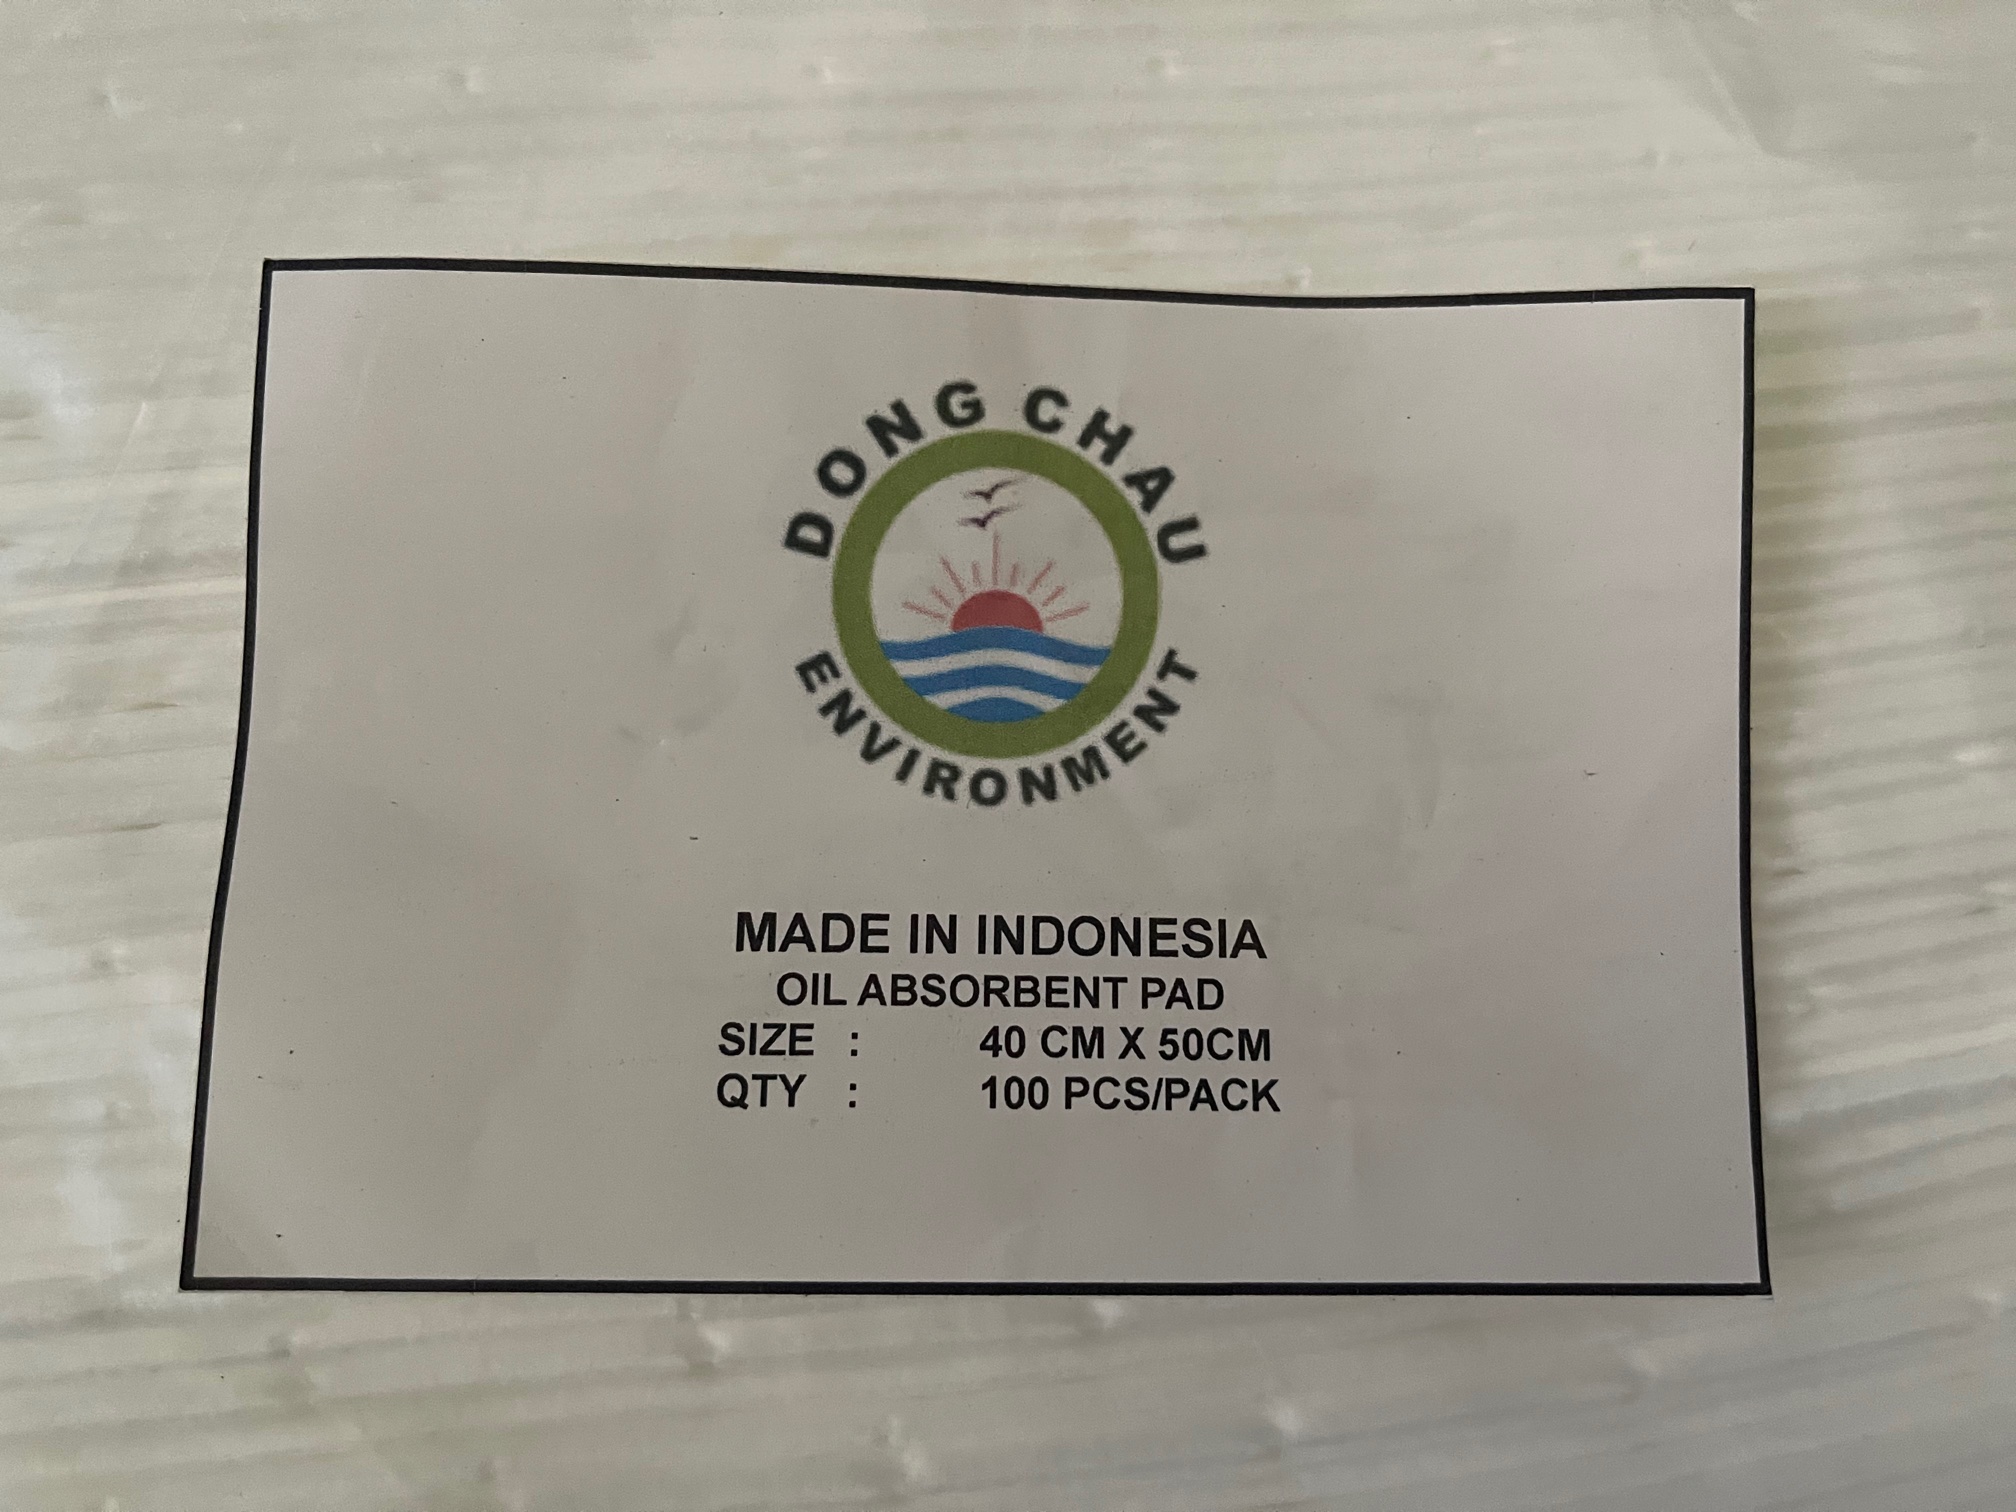 Tấm thấm hút dầu sản xuất tại Indonesia theo đặt hàng độc quyền của Đông Châu